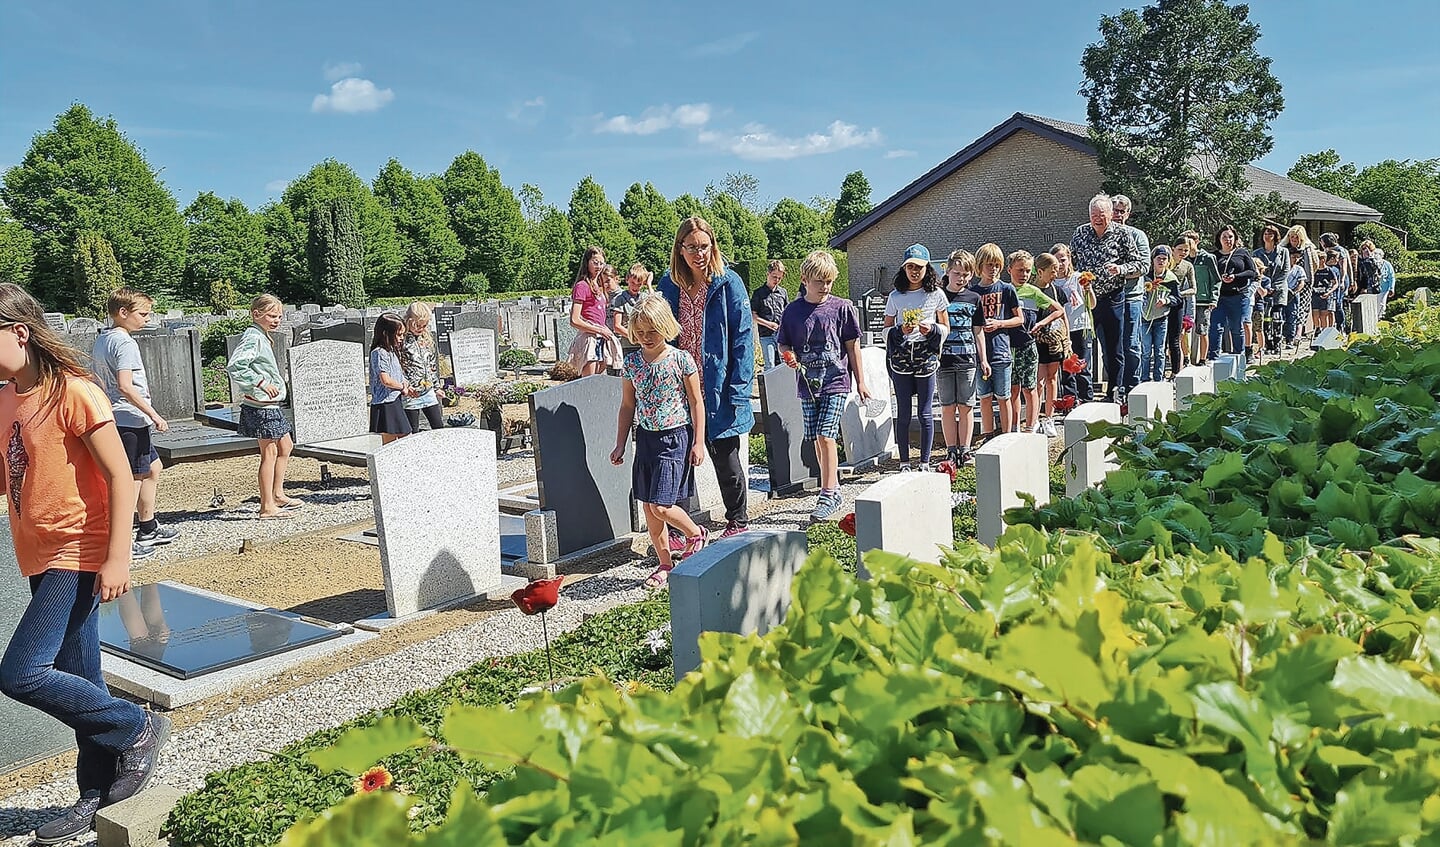 In een lange stoet liepen de leerlingen langs de gravenvan de vliegeniers op de Hervormde begraafplaats. 